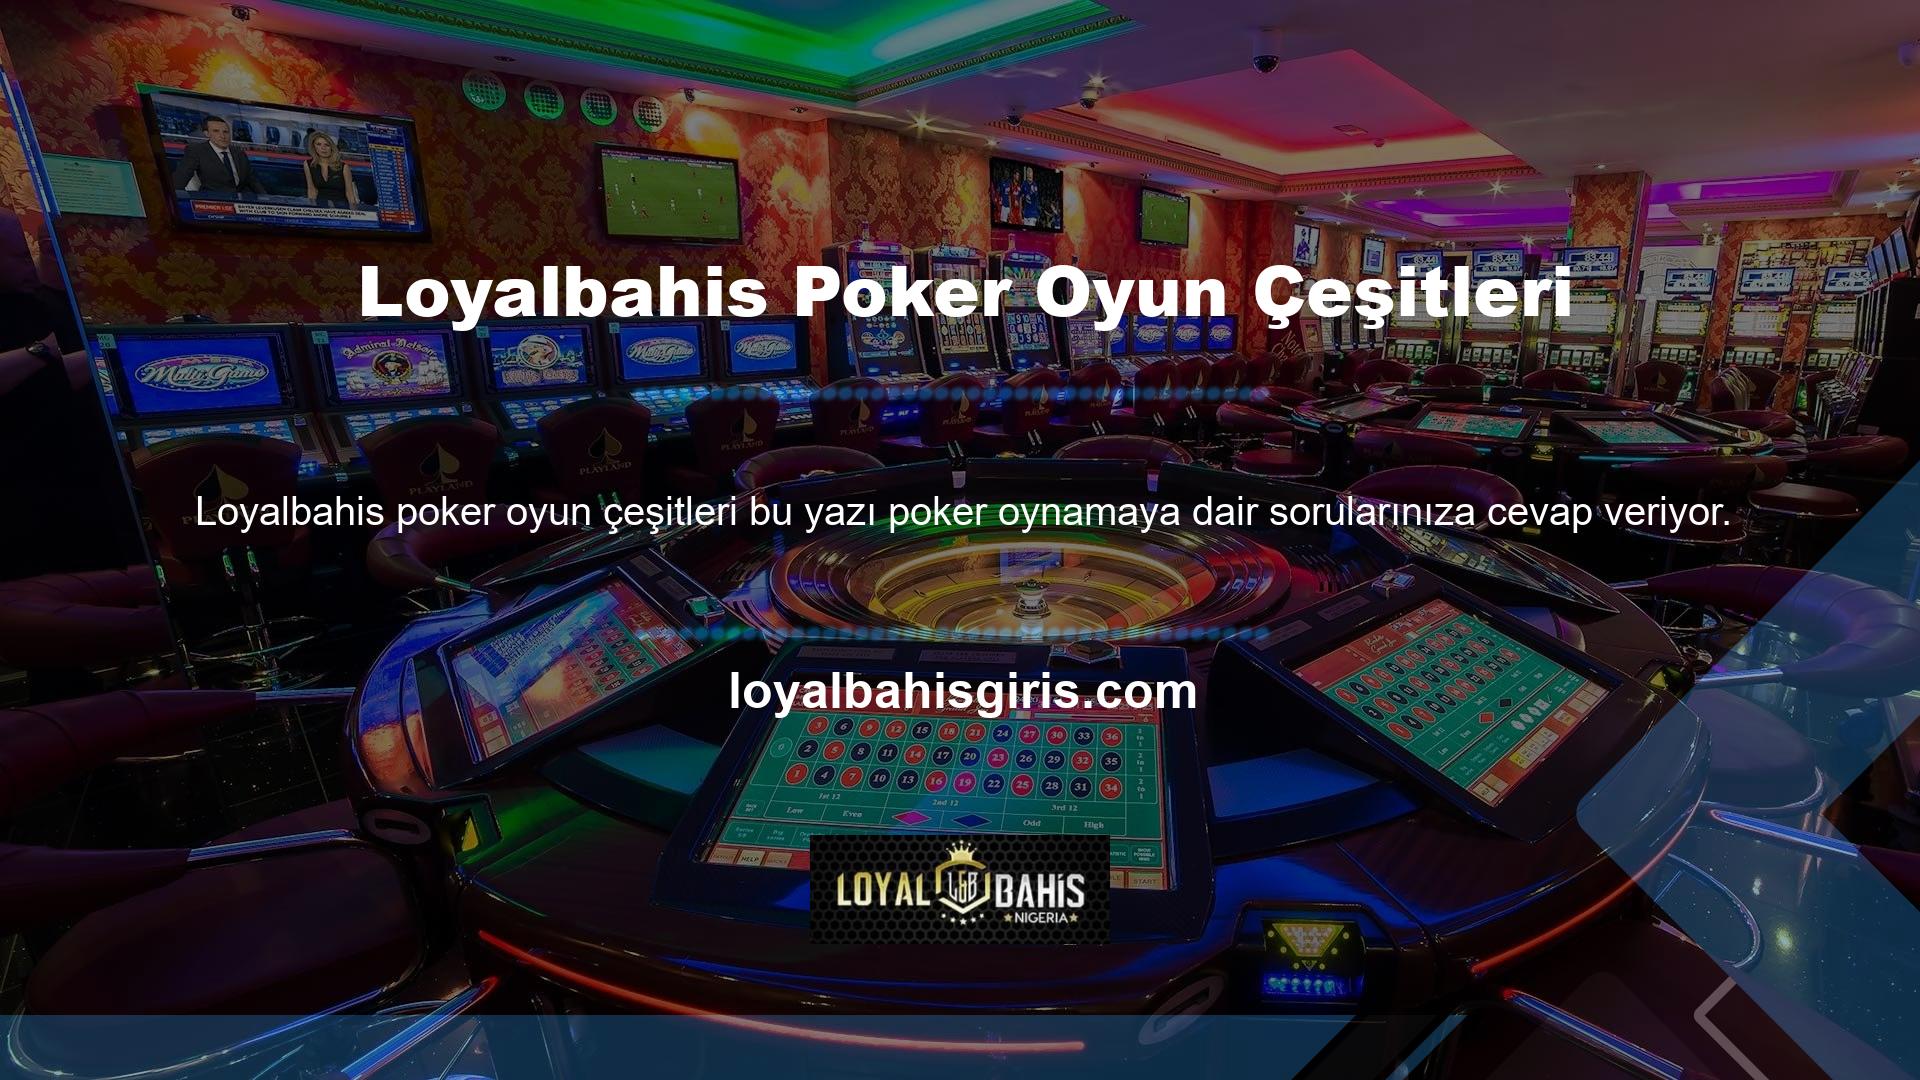 Öncelikle mobil uygulama üzerinden Loyalbahis Poker oyun türü hesabınıza giriş yapın, Poker bölümüne gidin ve Casino Hold'em sekmesine gidin